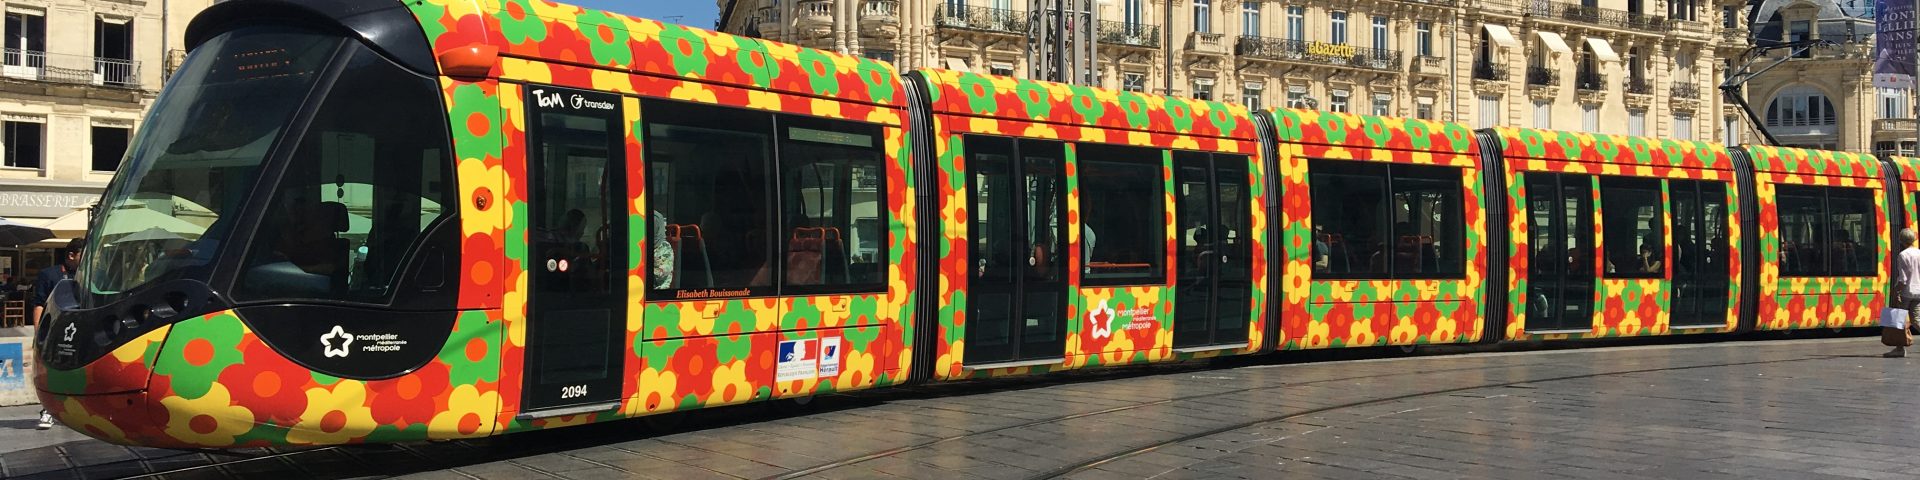 Montpellier tram